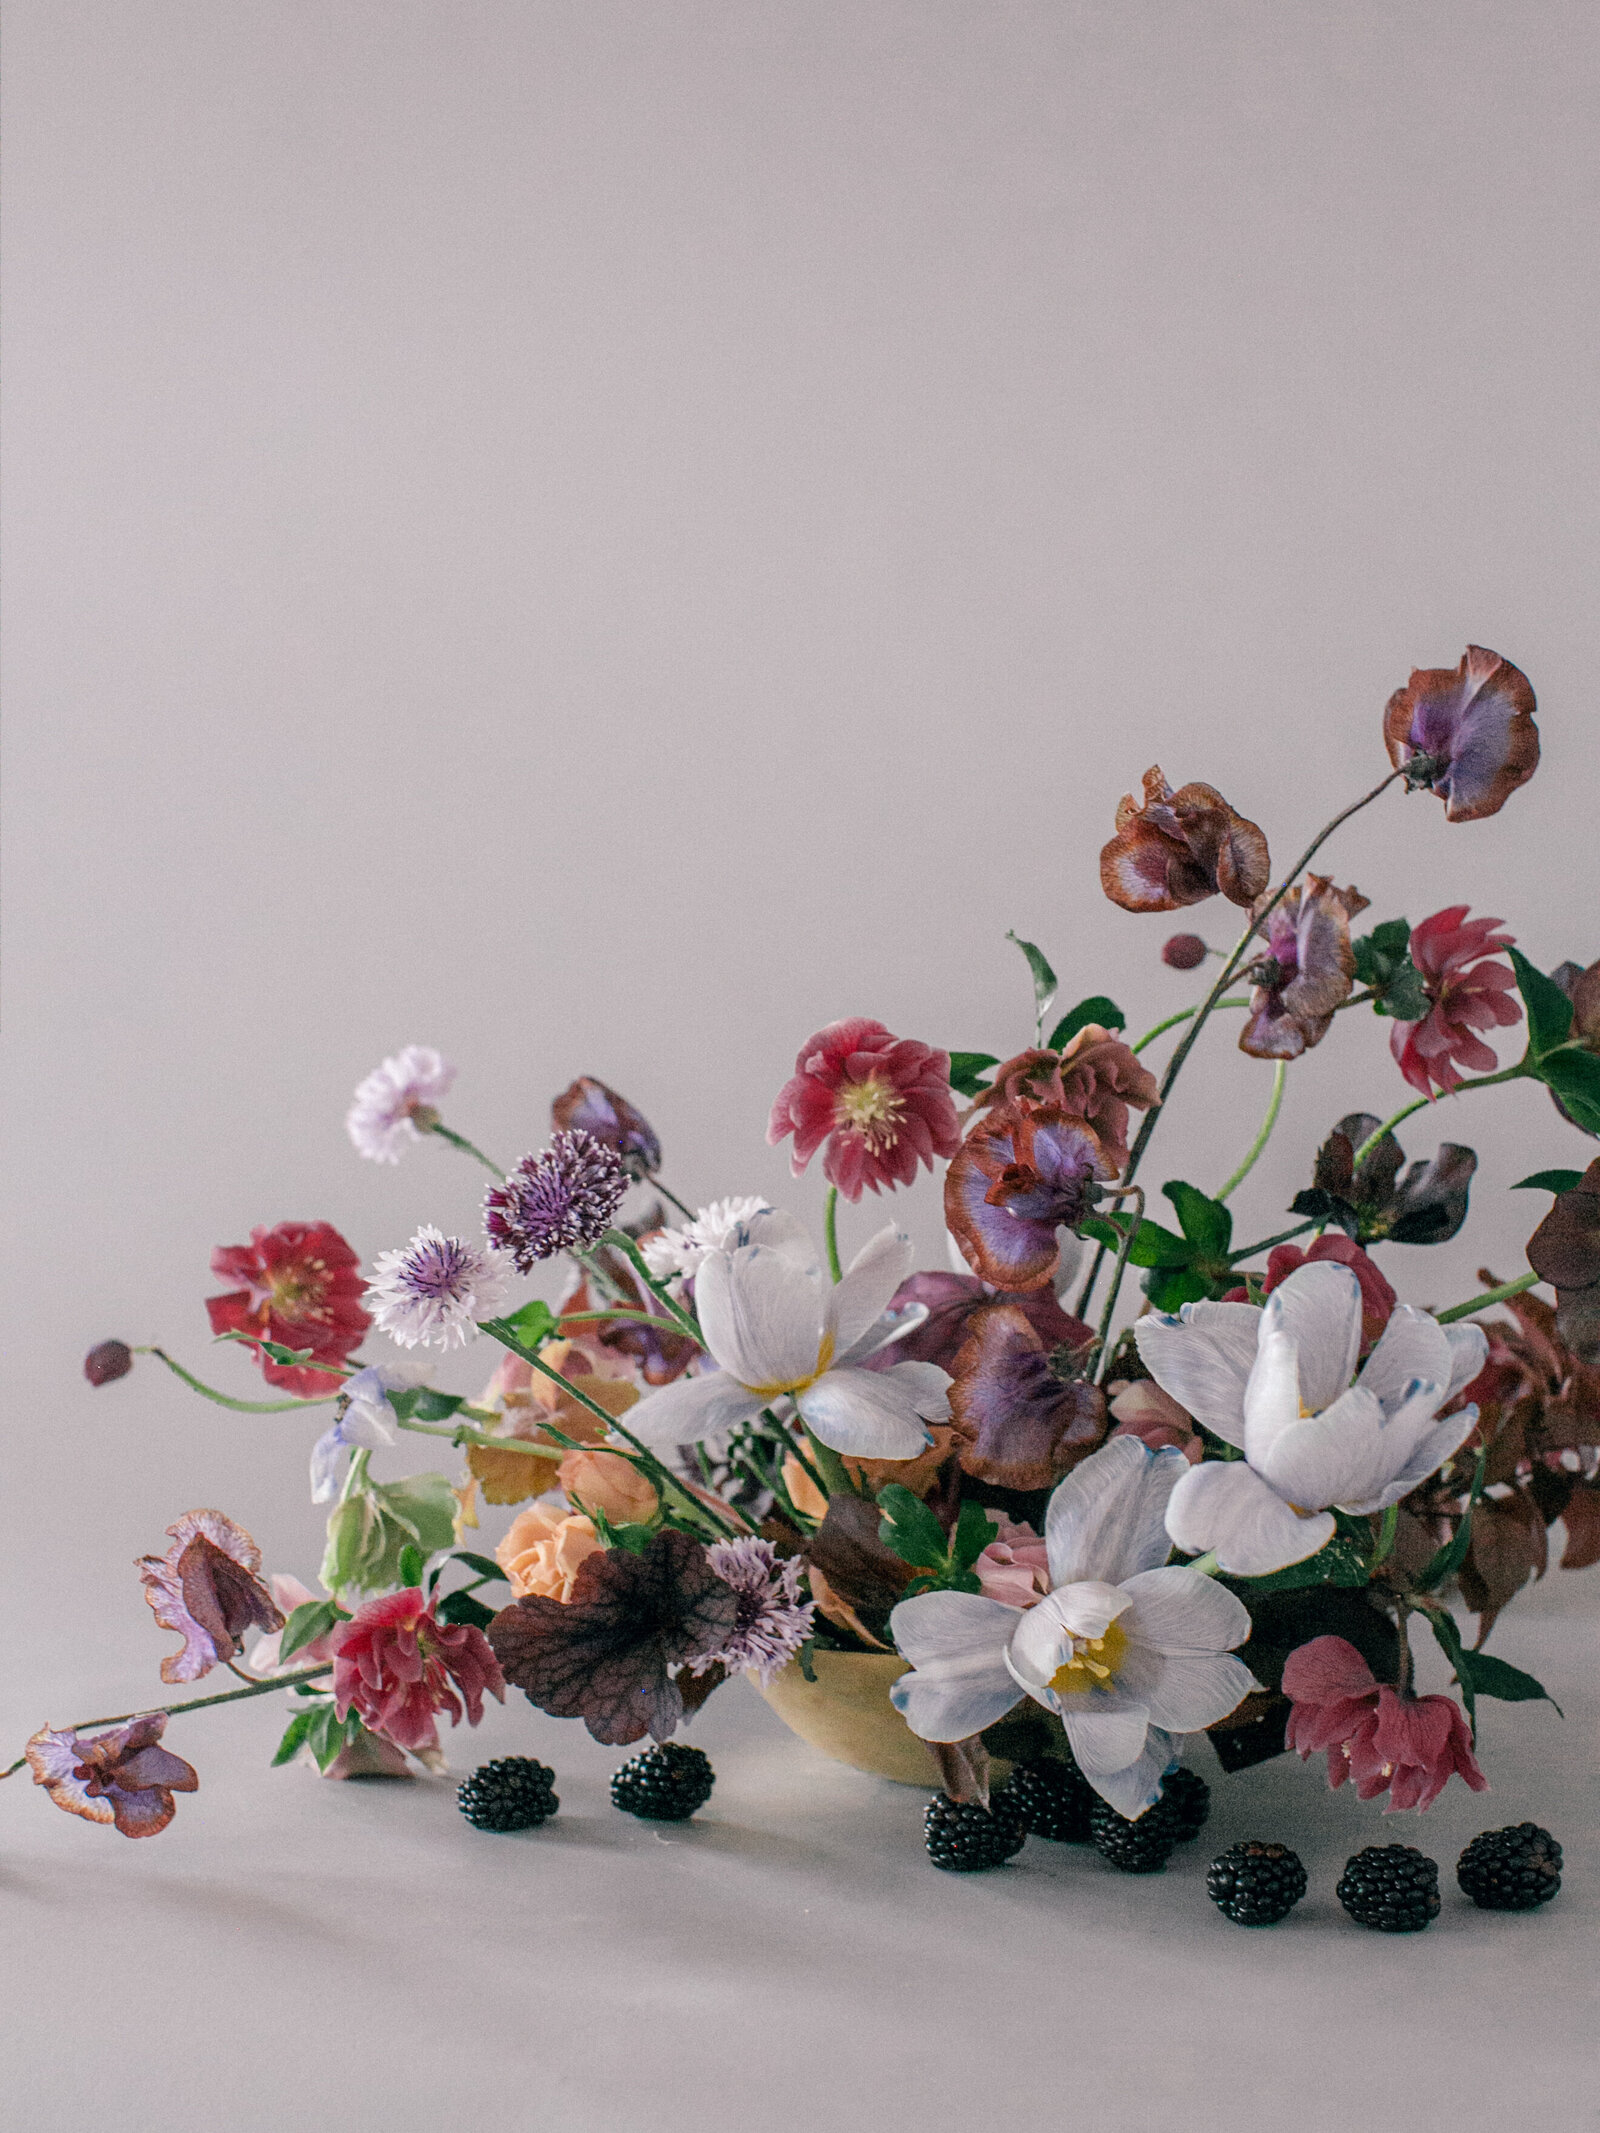 max-owens-design-at-home-floral-arrangements-11-purple-flowers